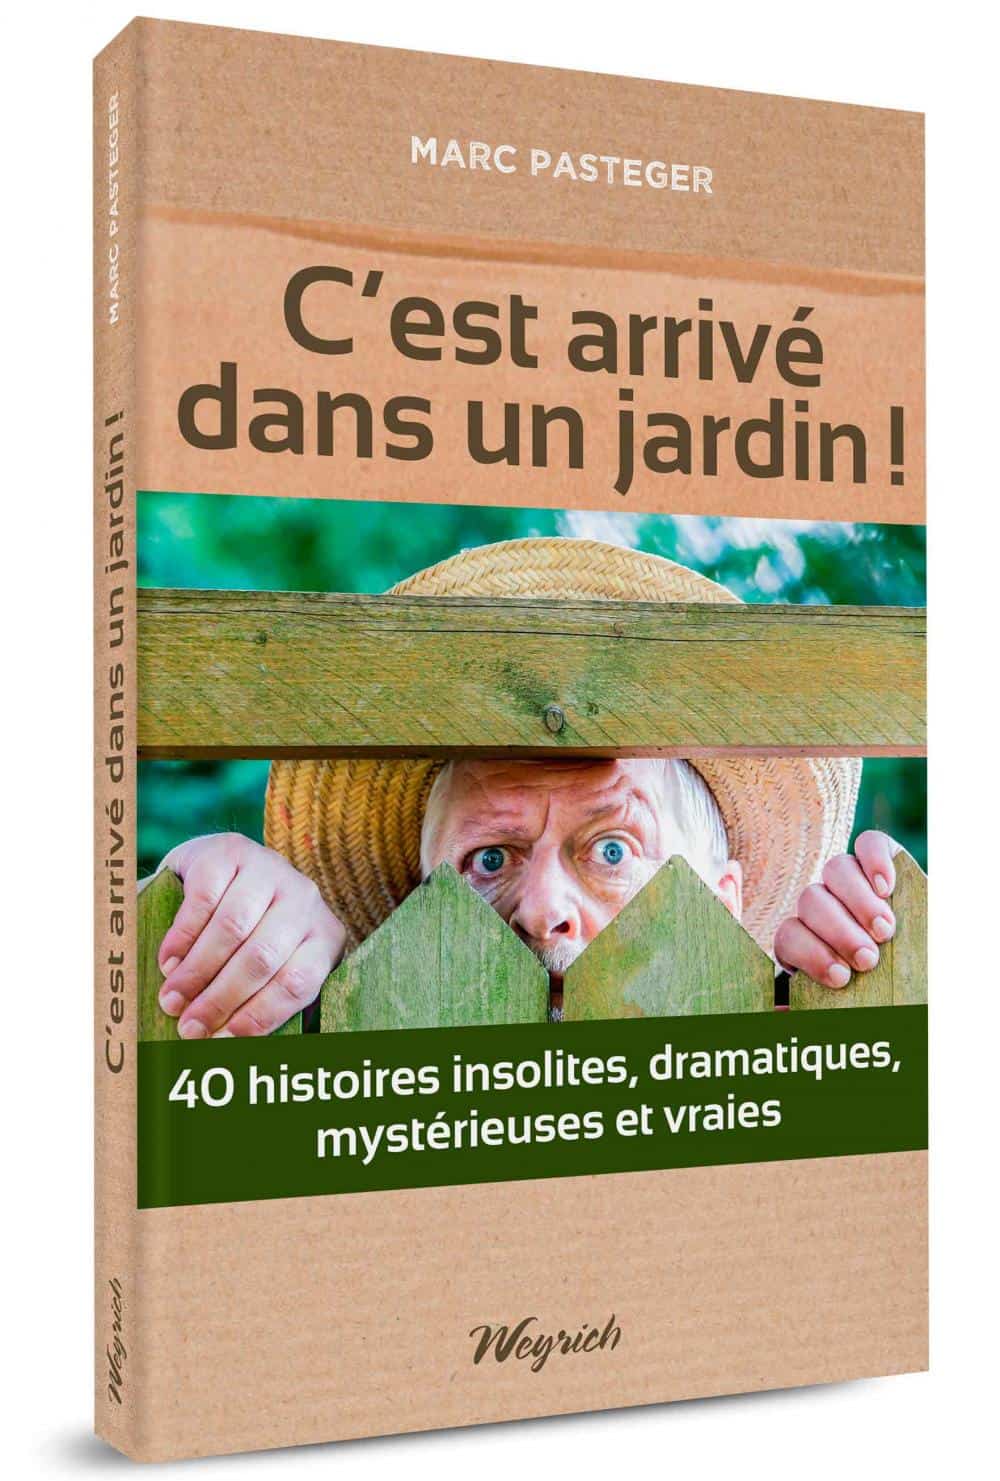 « C'est arrivé dans un jardin! 40 histoires insolites » de Marc Pasteger (16€) est disponible en librairies et sur notre e-shop.